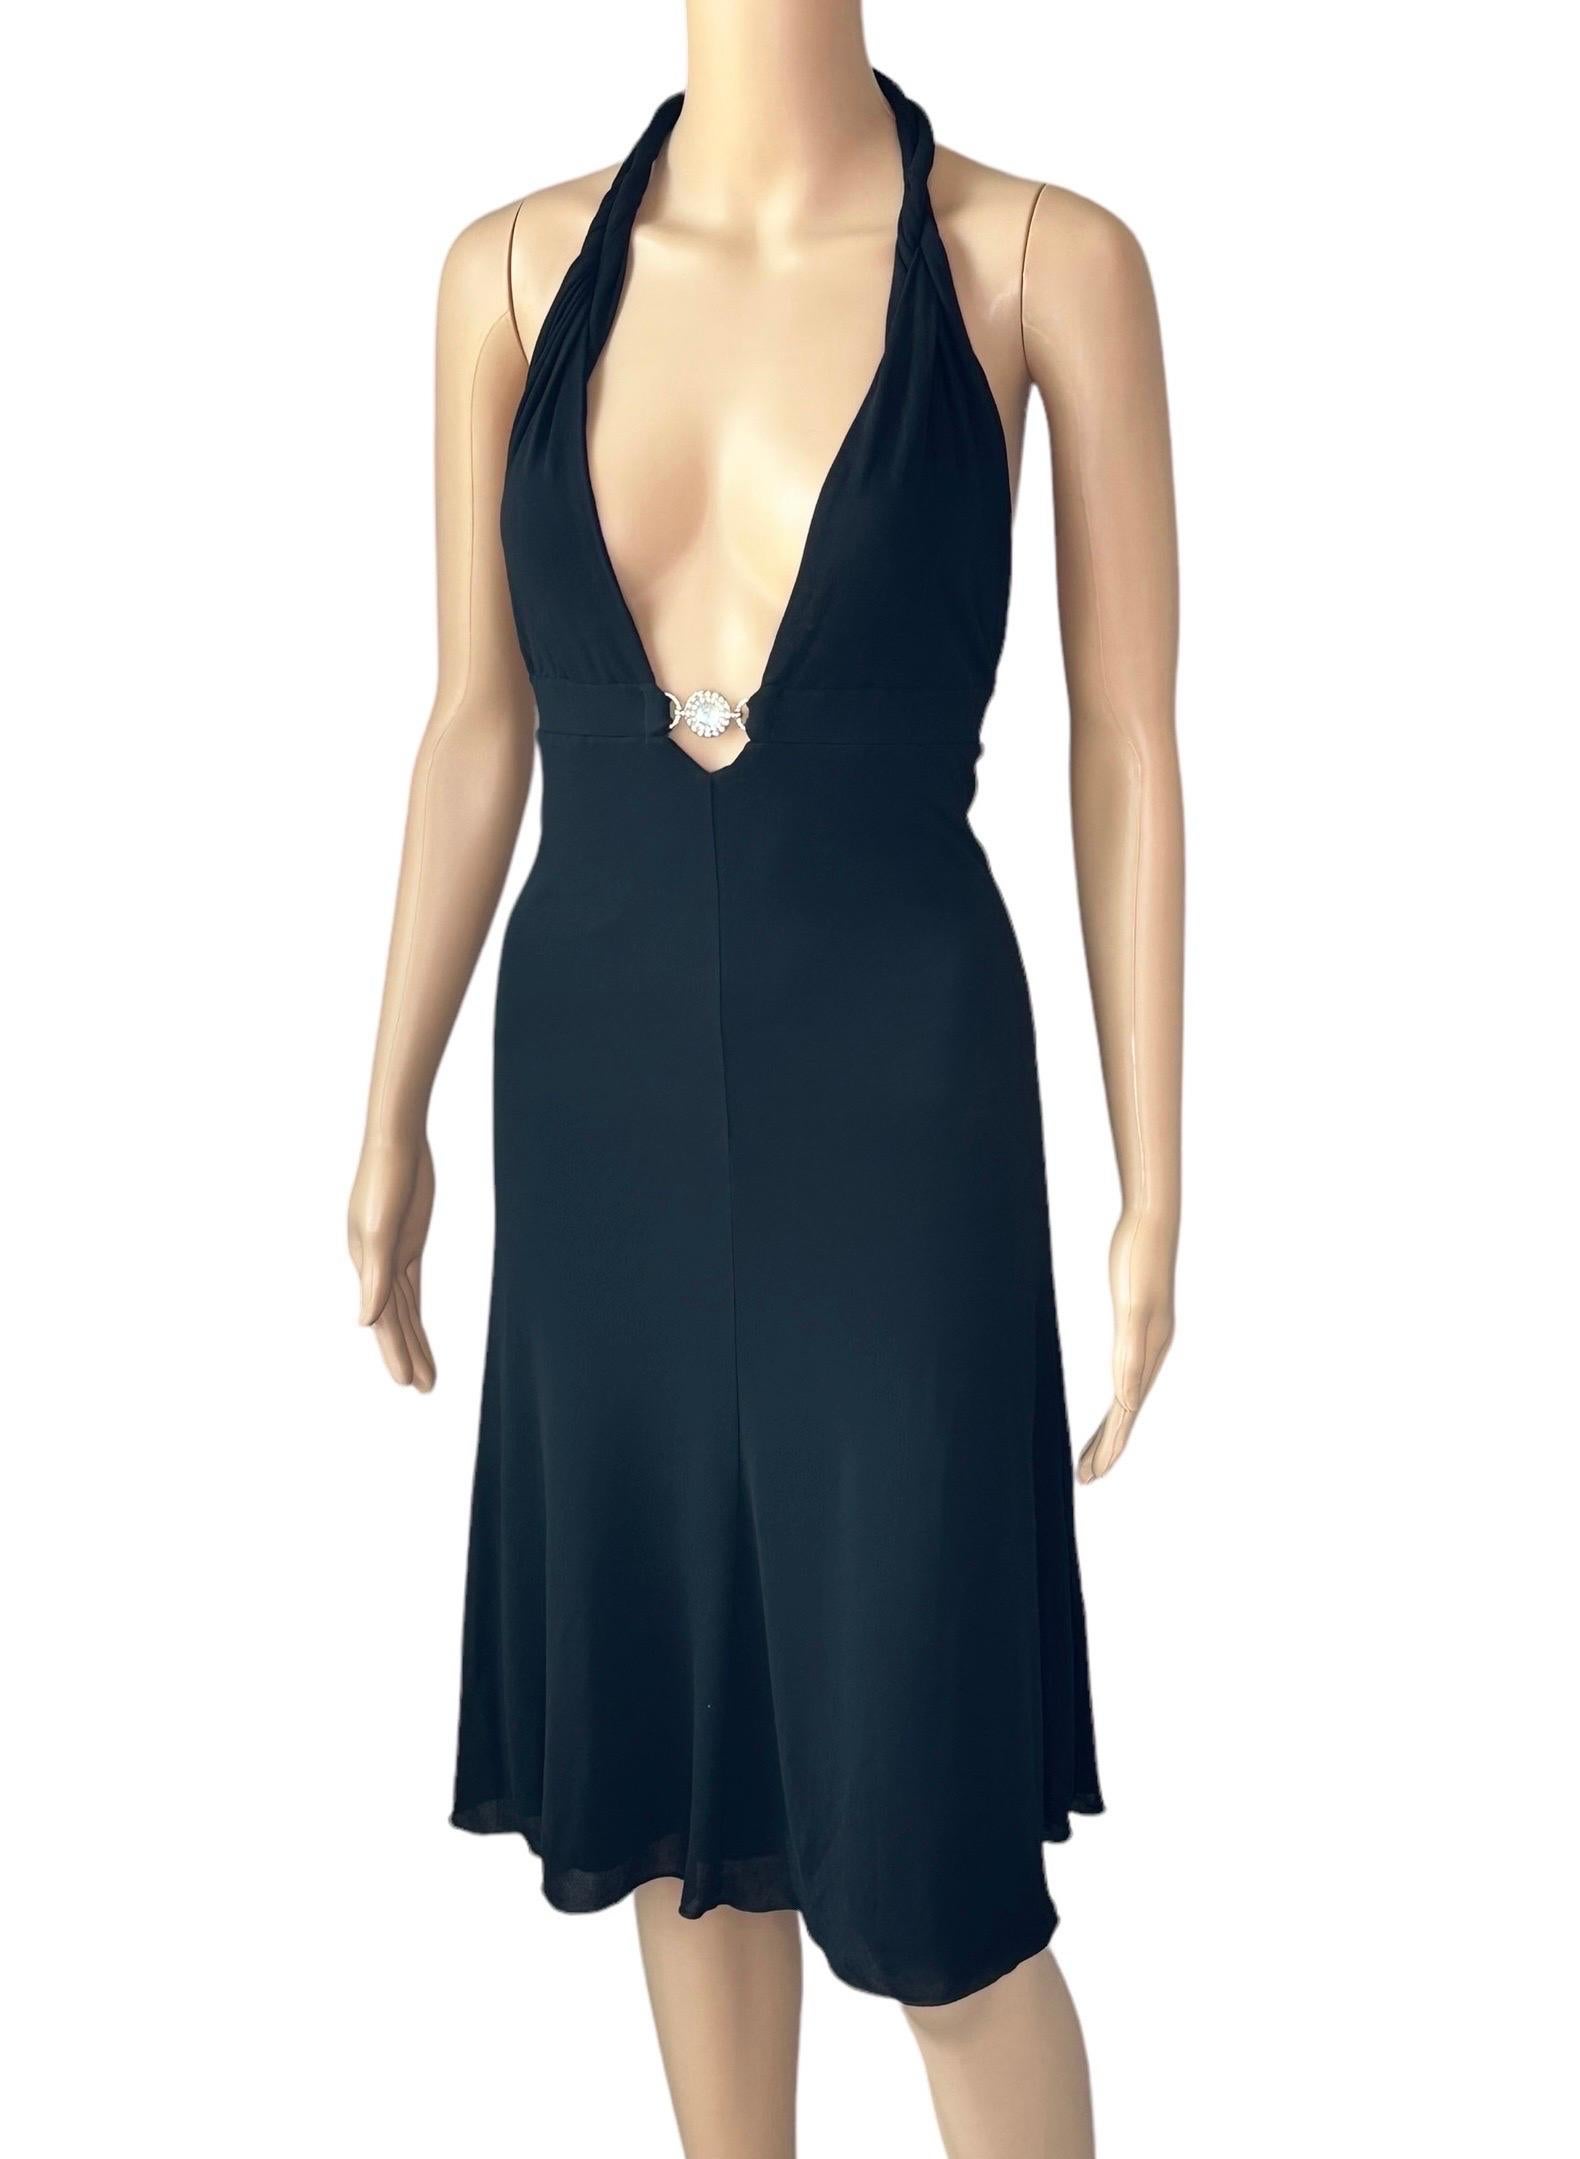 Versace S/S 2007 Crystal Logo Plunging Neckline Backless Halter Black Dress For Sale 7